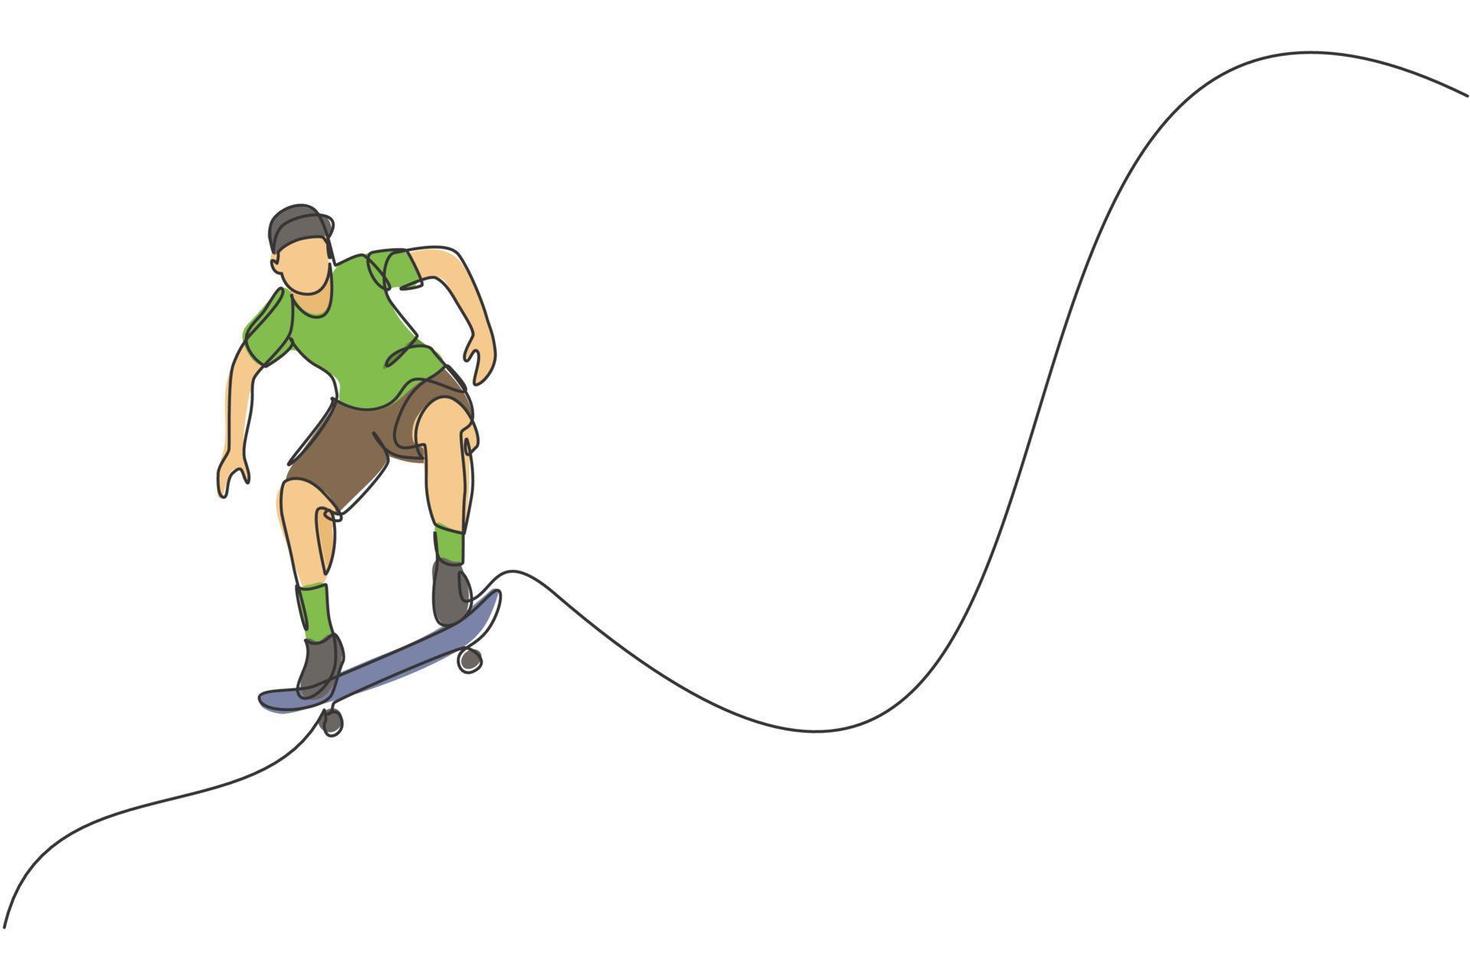 único desenho de linha contínua do jovem skatista legal andando de skate e realizando truques no parque de skate. praticando o conceito de esporte ao ar livre. ilustração gráfica de vetor de design de desenho de uma linha na moda